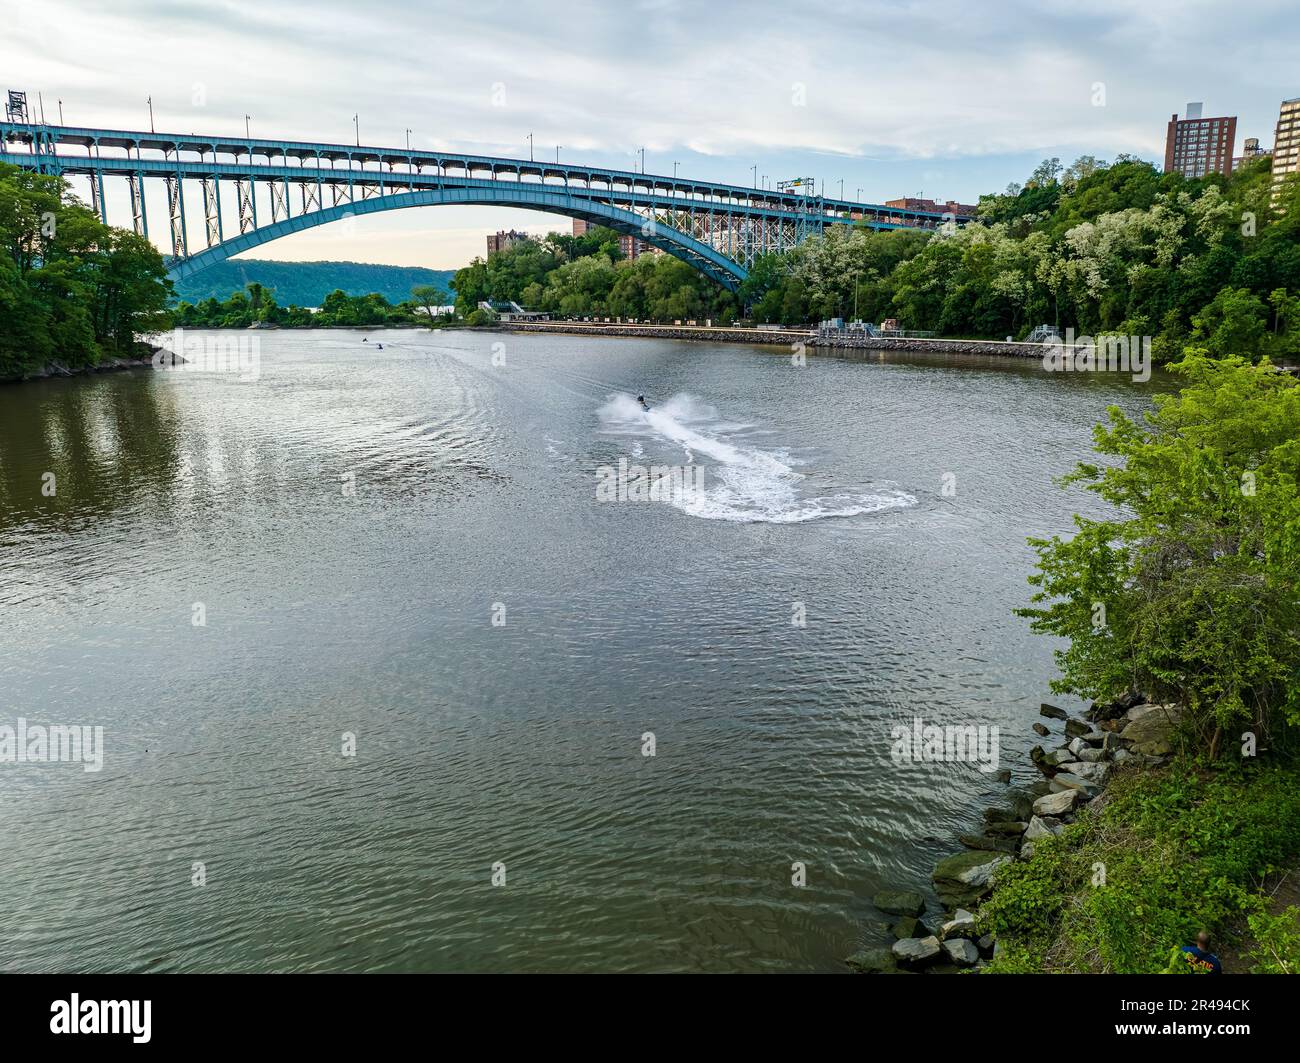 The Henry Hudson Bridge crossing the Spuyten Duyvil Creek. New York, USA. Stock Photo